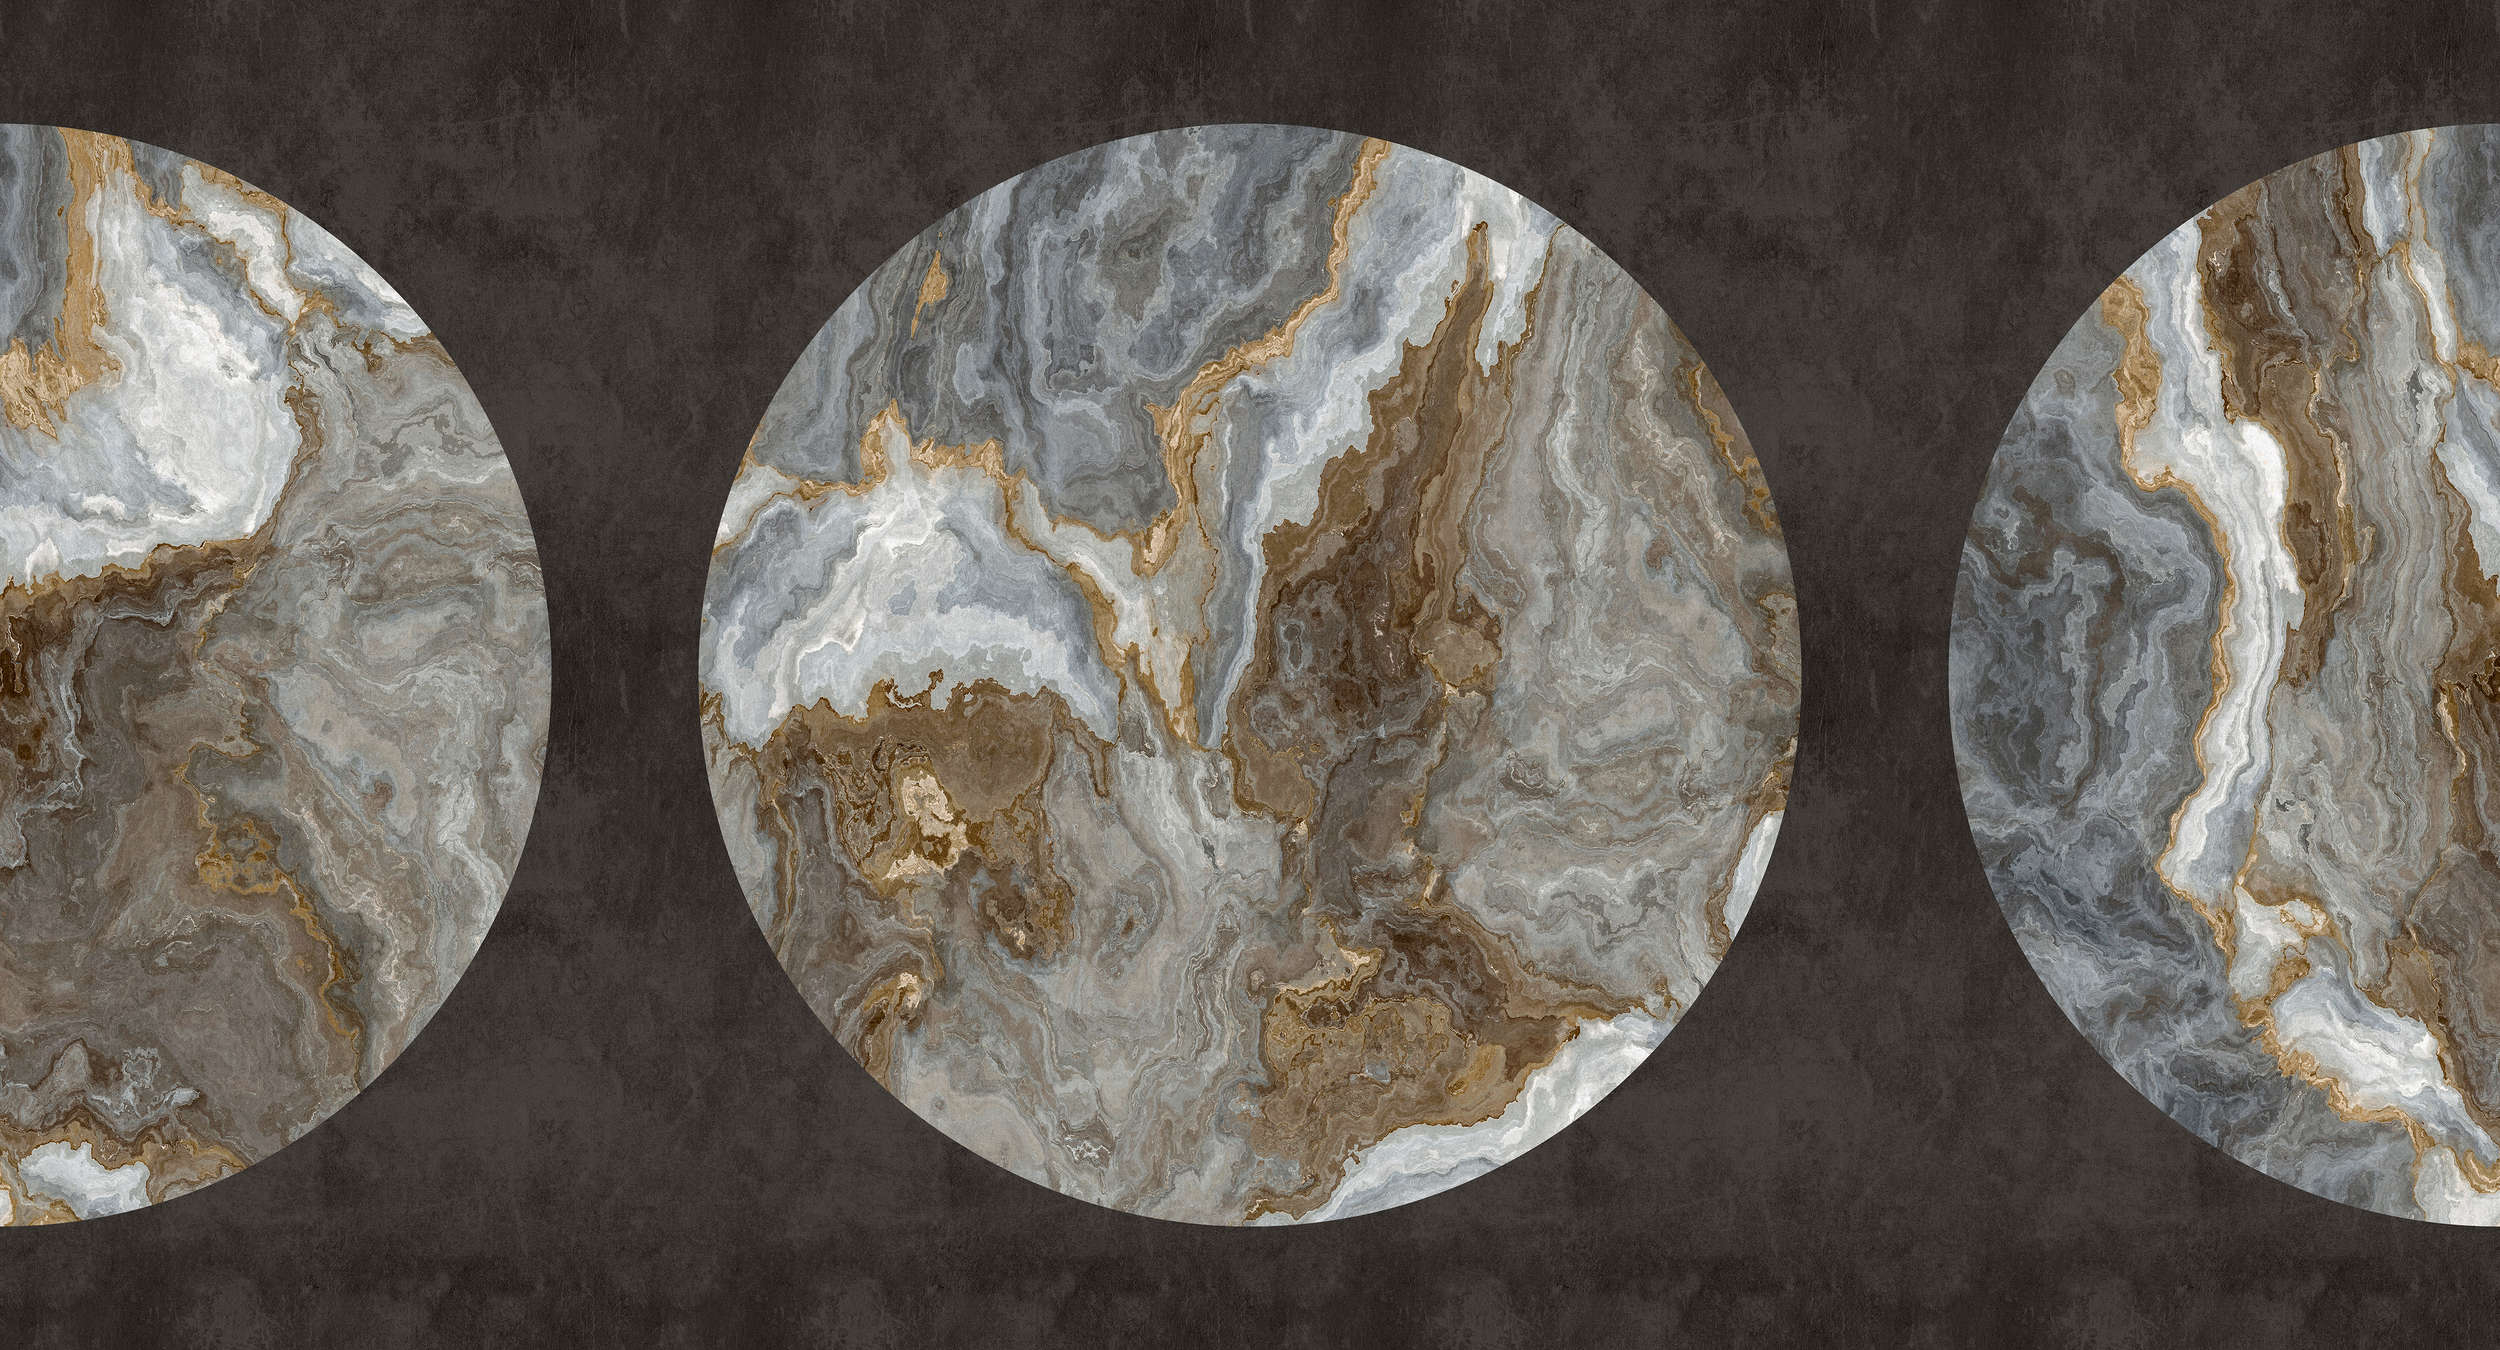             Luna 1 - Papel pintado de mármol con diseño circular y aspecto de yeso negro
        